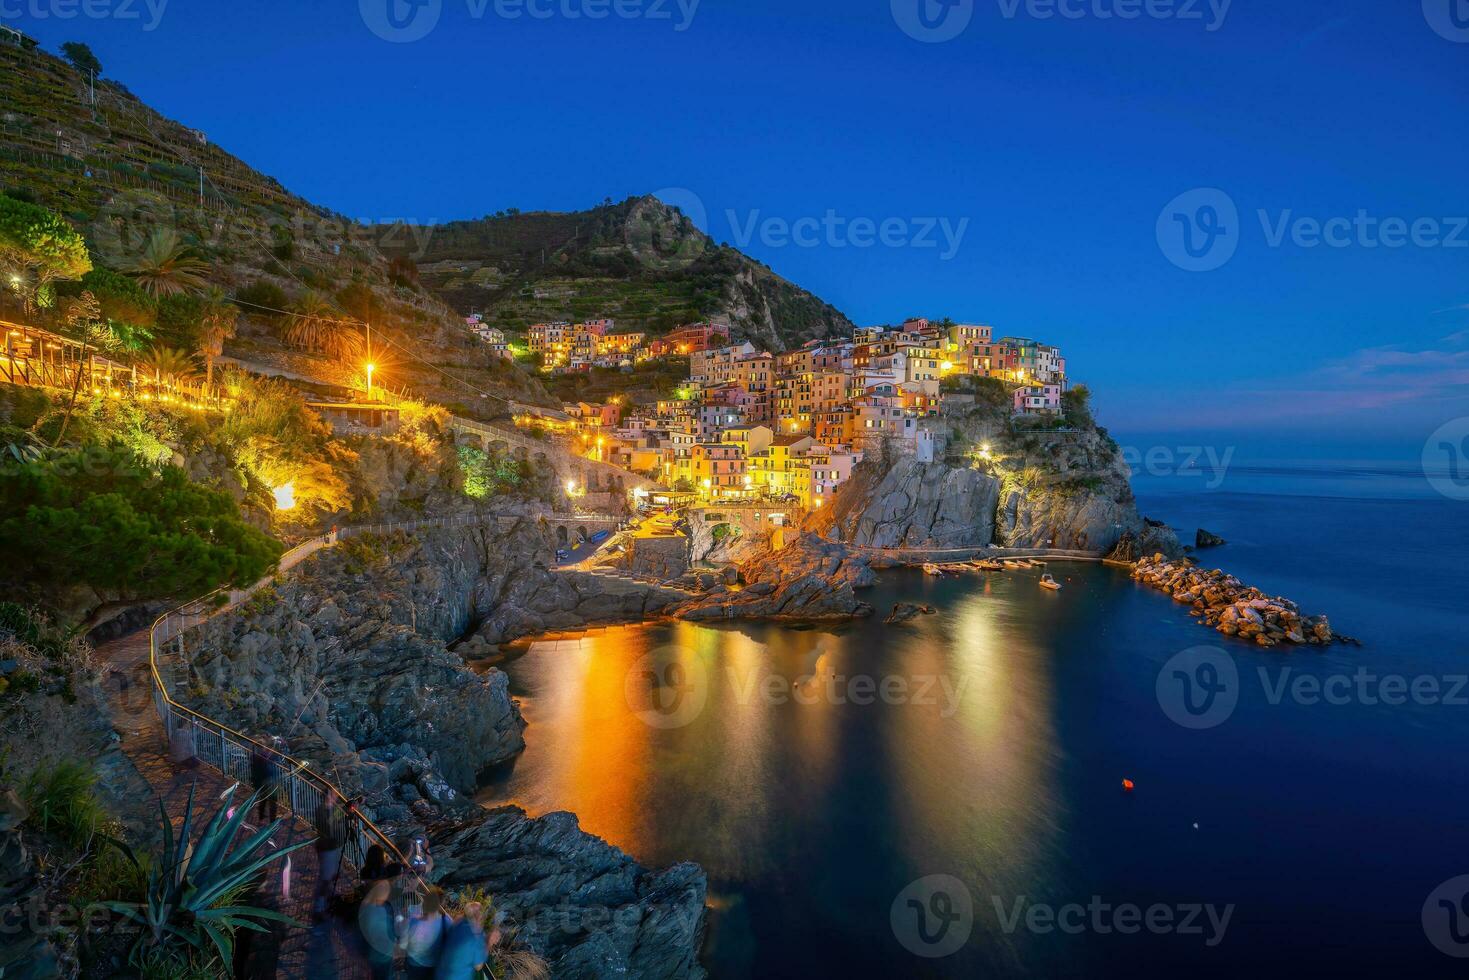 färgrik stadsbild av byggnader över medelhavs hav, Europa, cinque terre i Italien foto